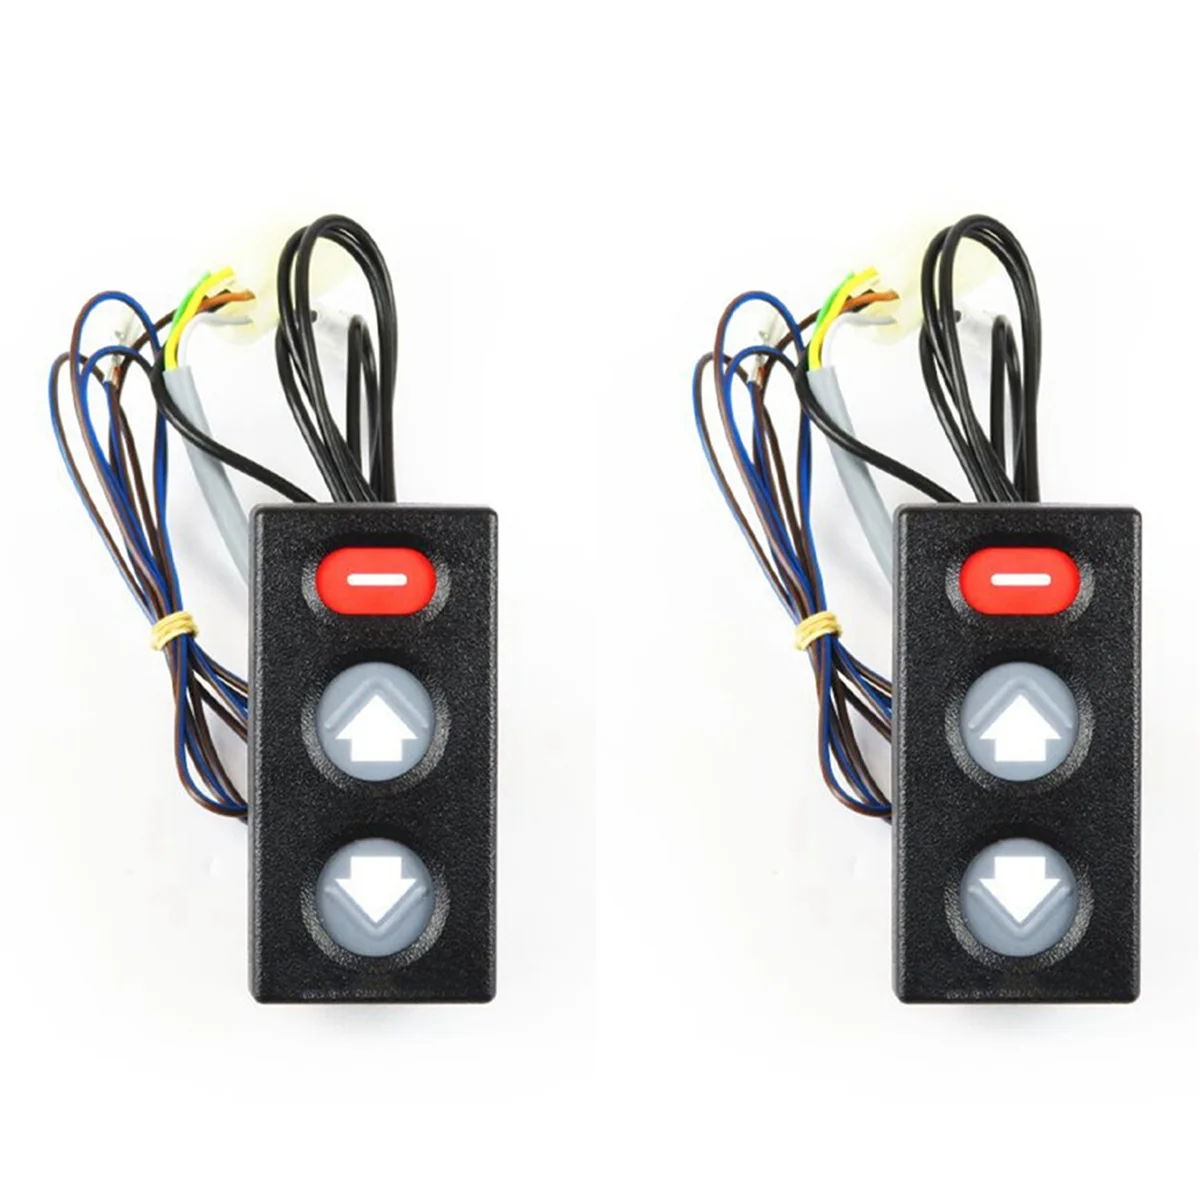 

2X3855650 приводы Trim Tilt Switch, панель управления для Volvo Penta DP SP290 SP-E 3855650 873617